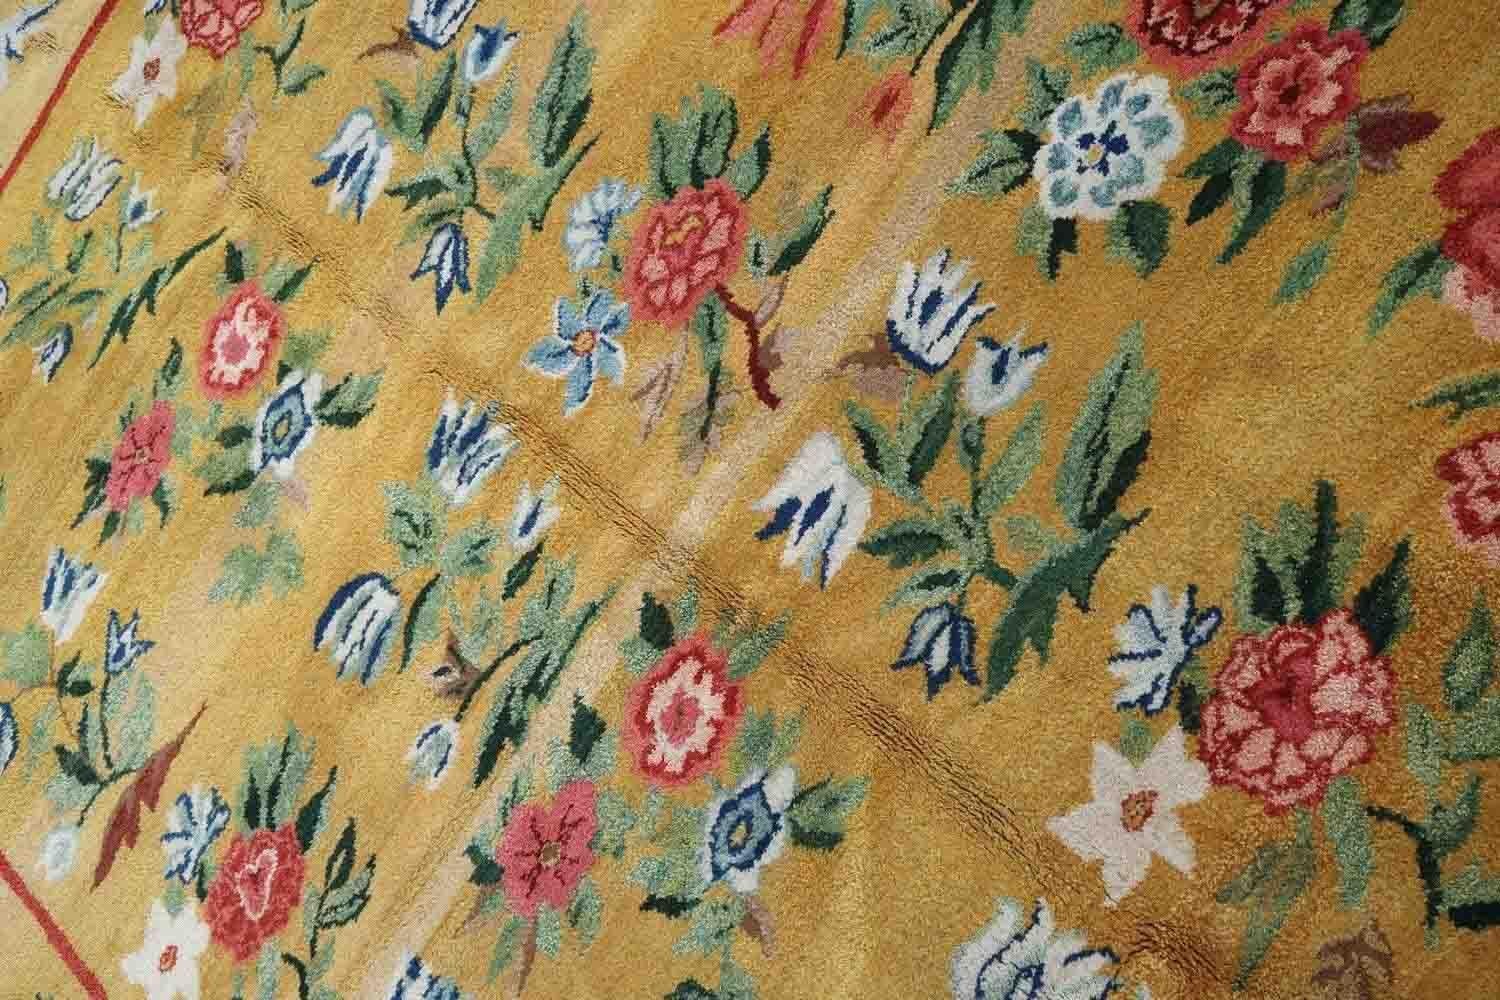 Handgefertigter rumänischer Bessarabien-Teppich in gelber Farbe. Der Teppich stammt aus der Mitte des 20. Jahrhunderts und ist in gutem Originalzustand.

-Zustand: original gut,

-CIRCA: 1950er Jahre,

-Größe: 208cm x 260cm (6,8' x